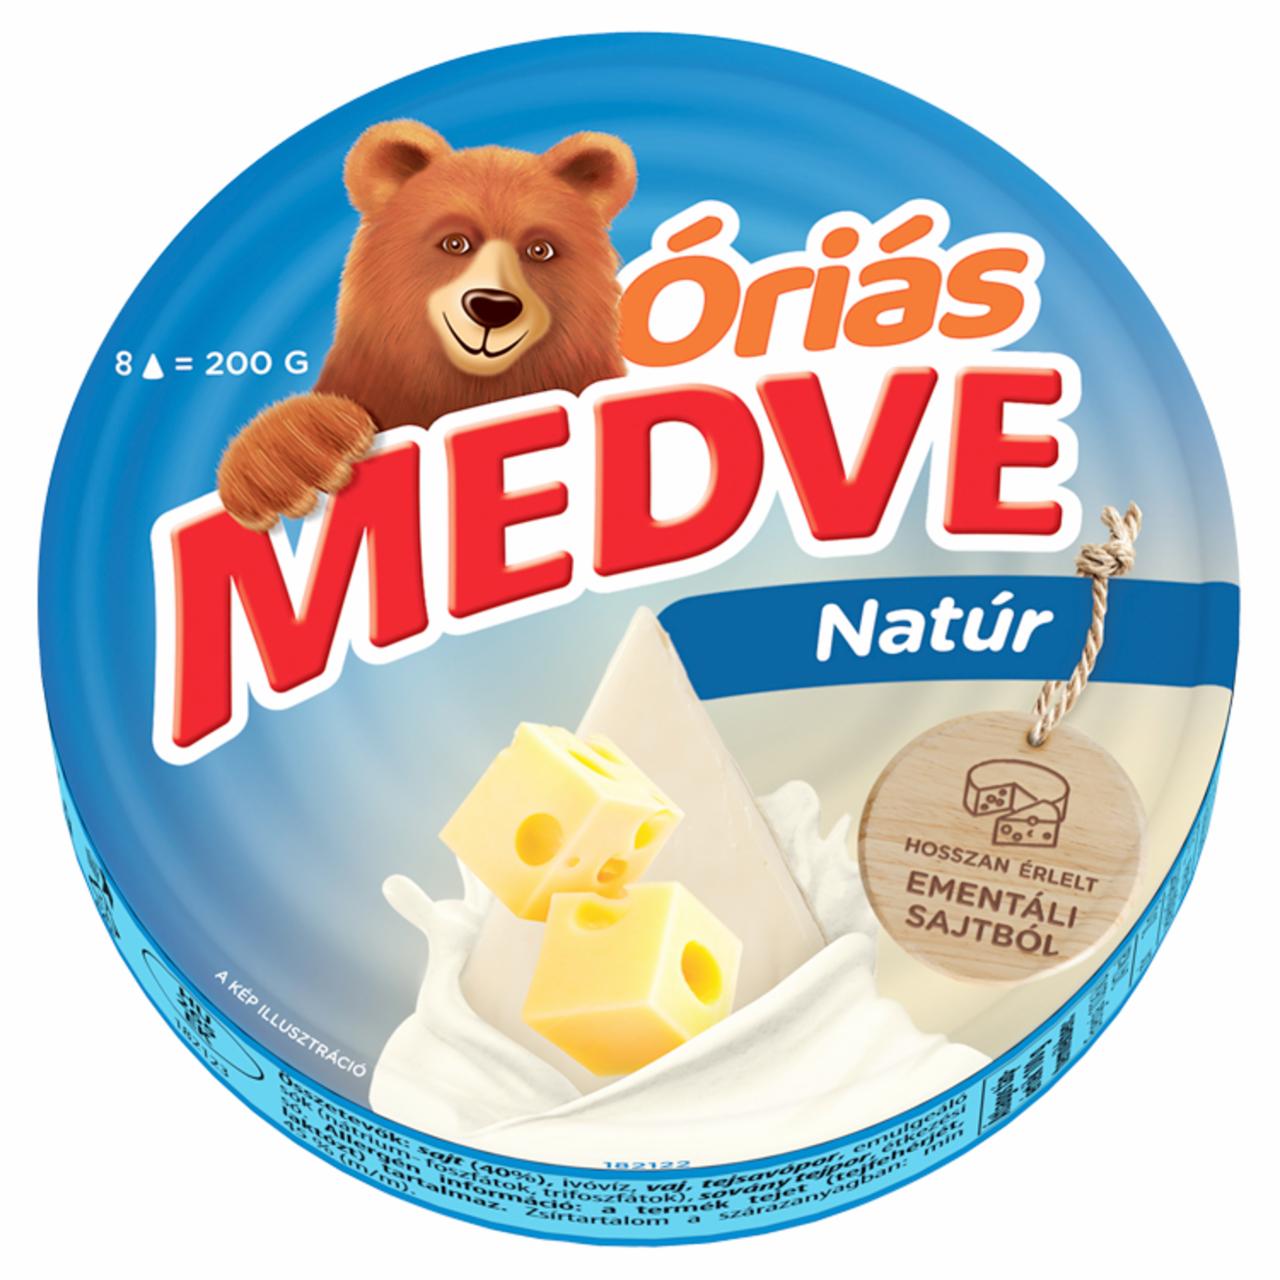 Képek - Medve Óriás natúr kenhető, zsíros, ömlesztett sajt 8 x 25 g (200 g)